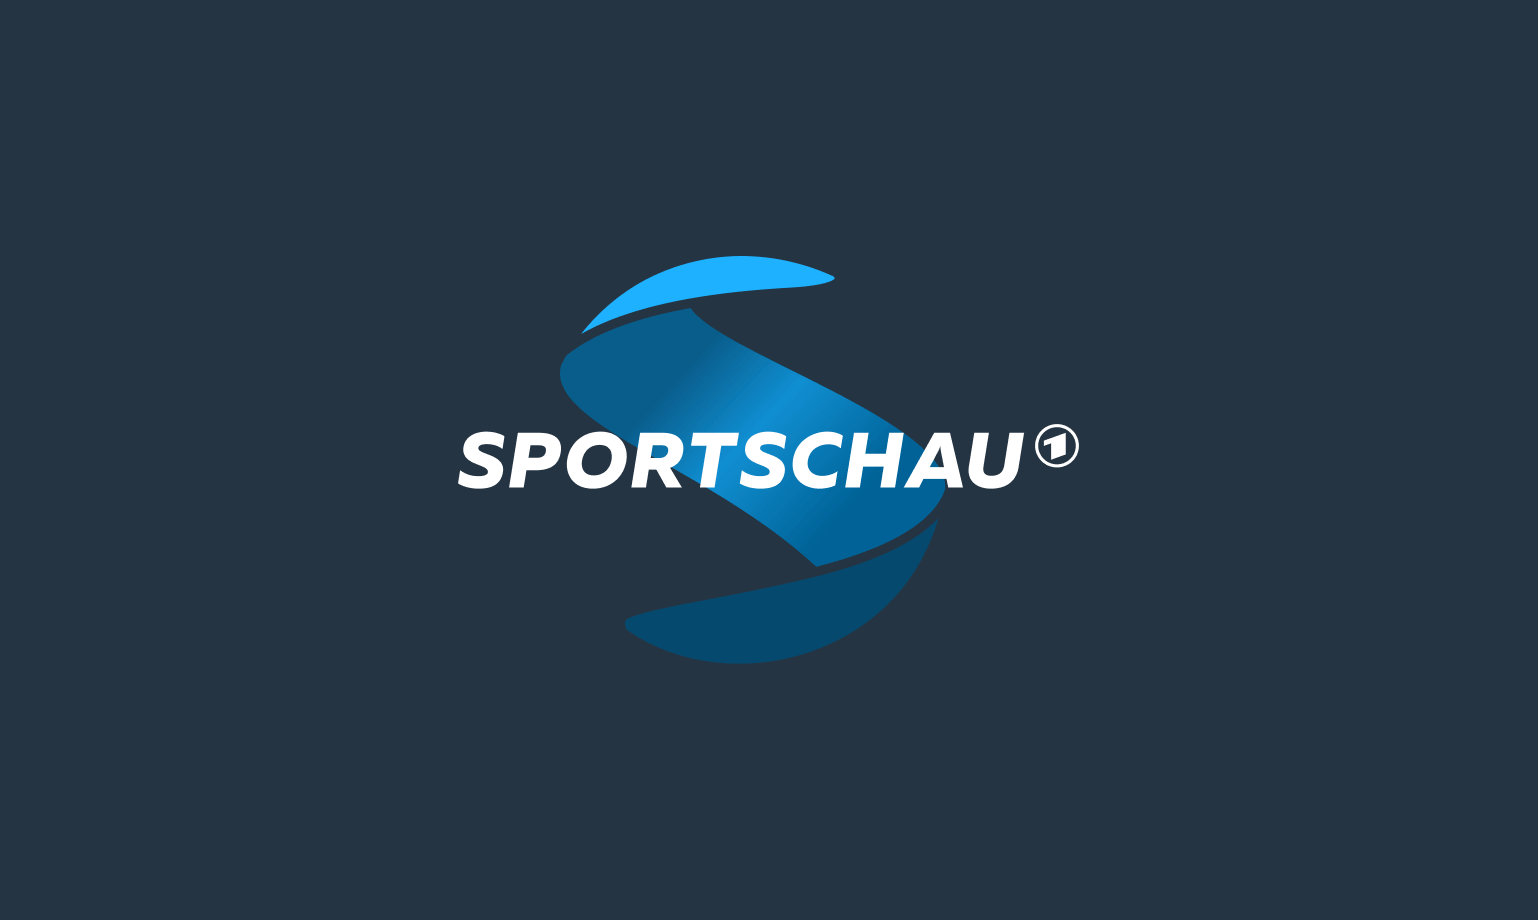 Sportschau-Image-1